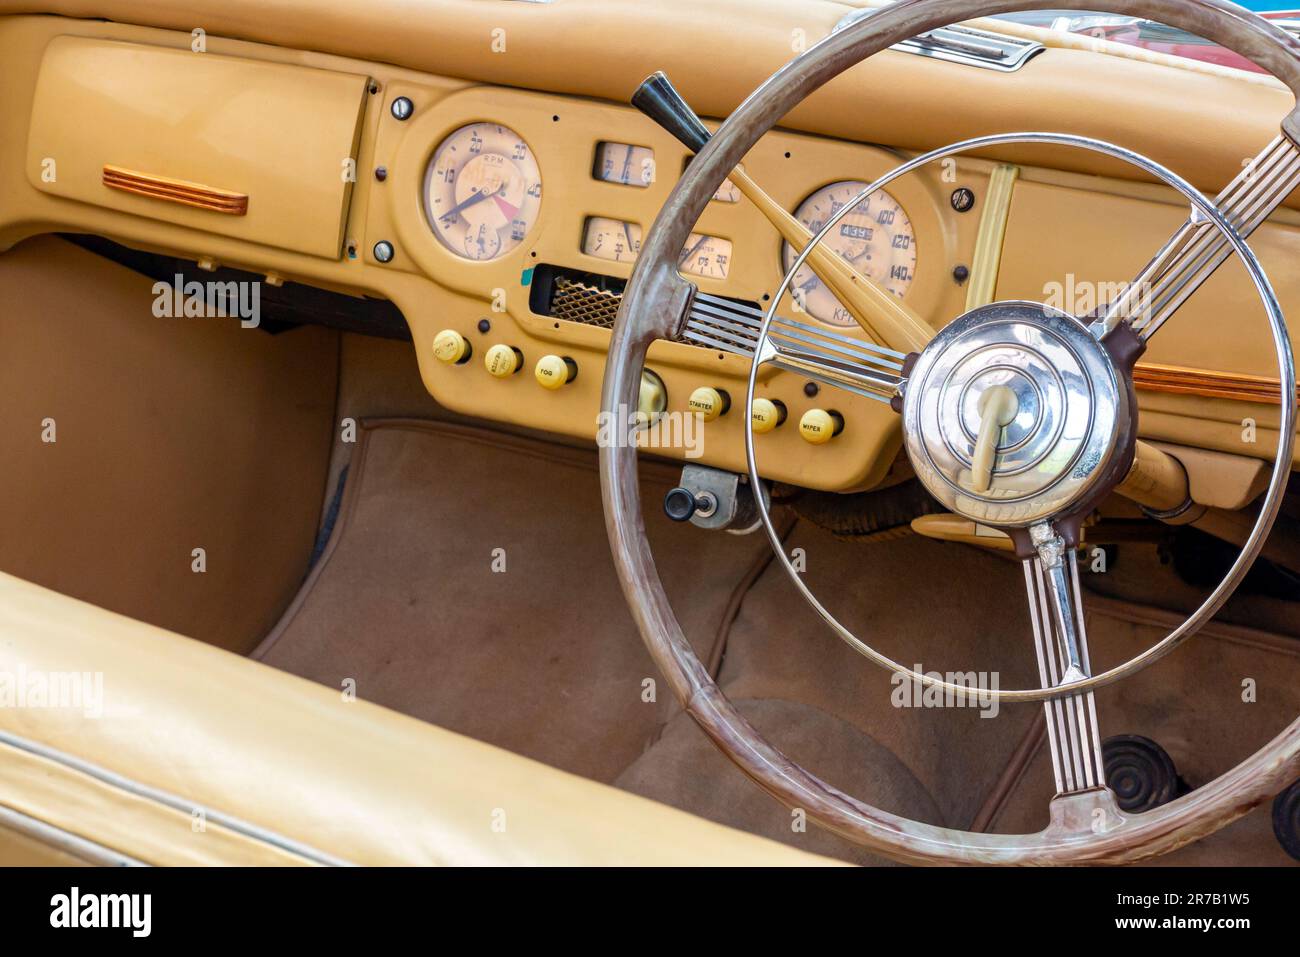 Détail de l'intérieur d'une Austin A90 Atlantic cabriolet une voiture britannique construite par Austin de 1949 à 1952. Banque D'Images